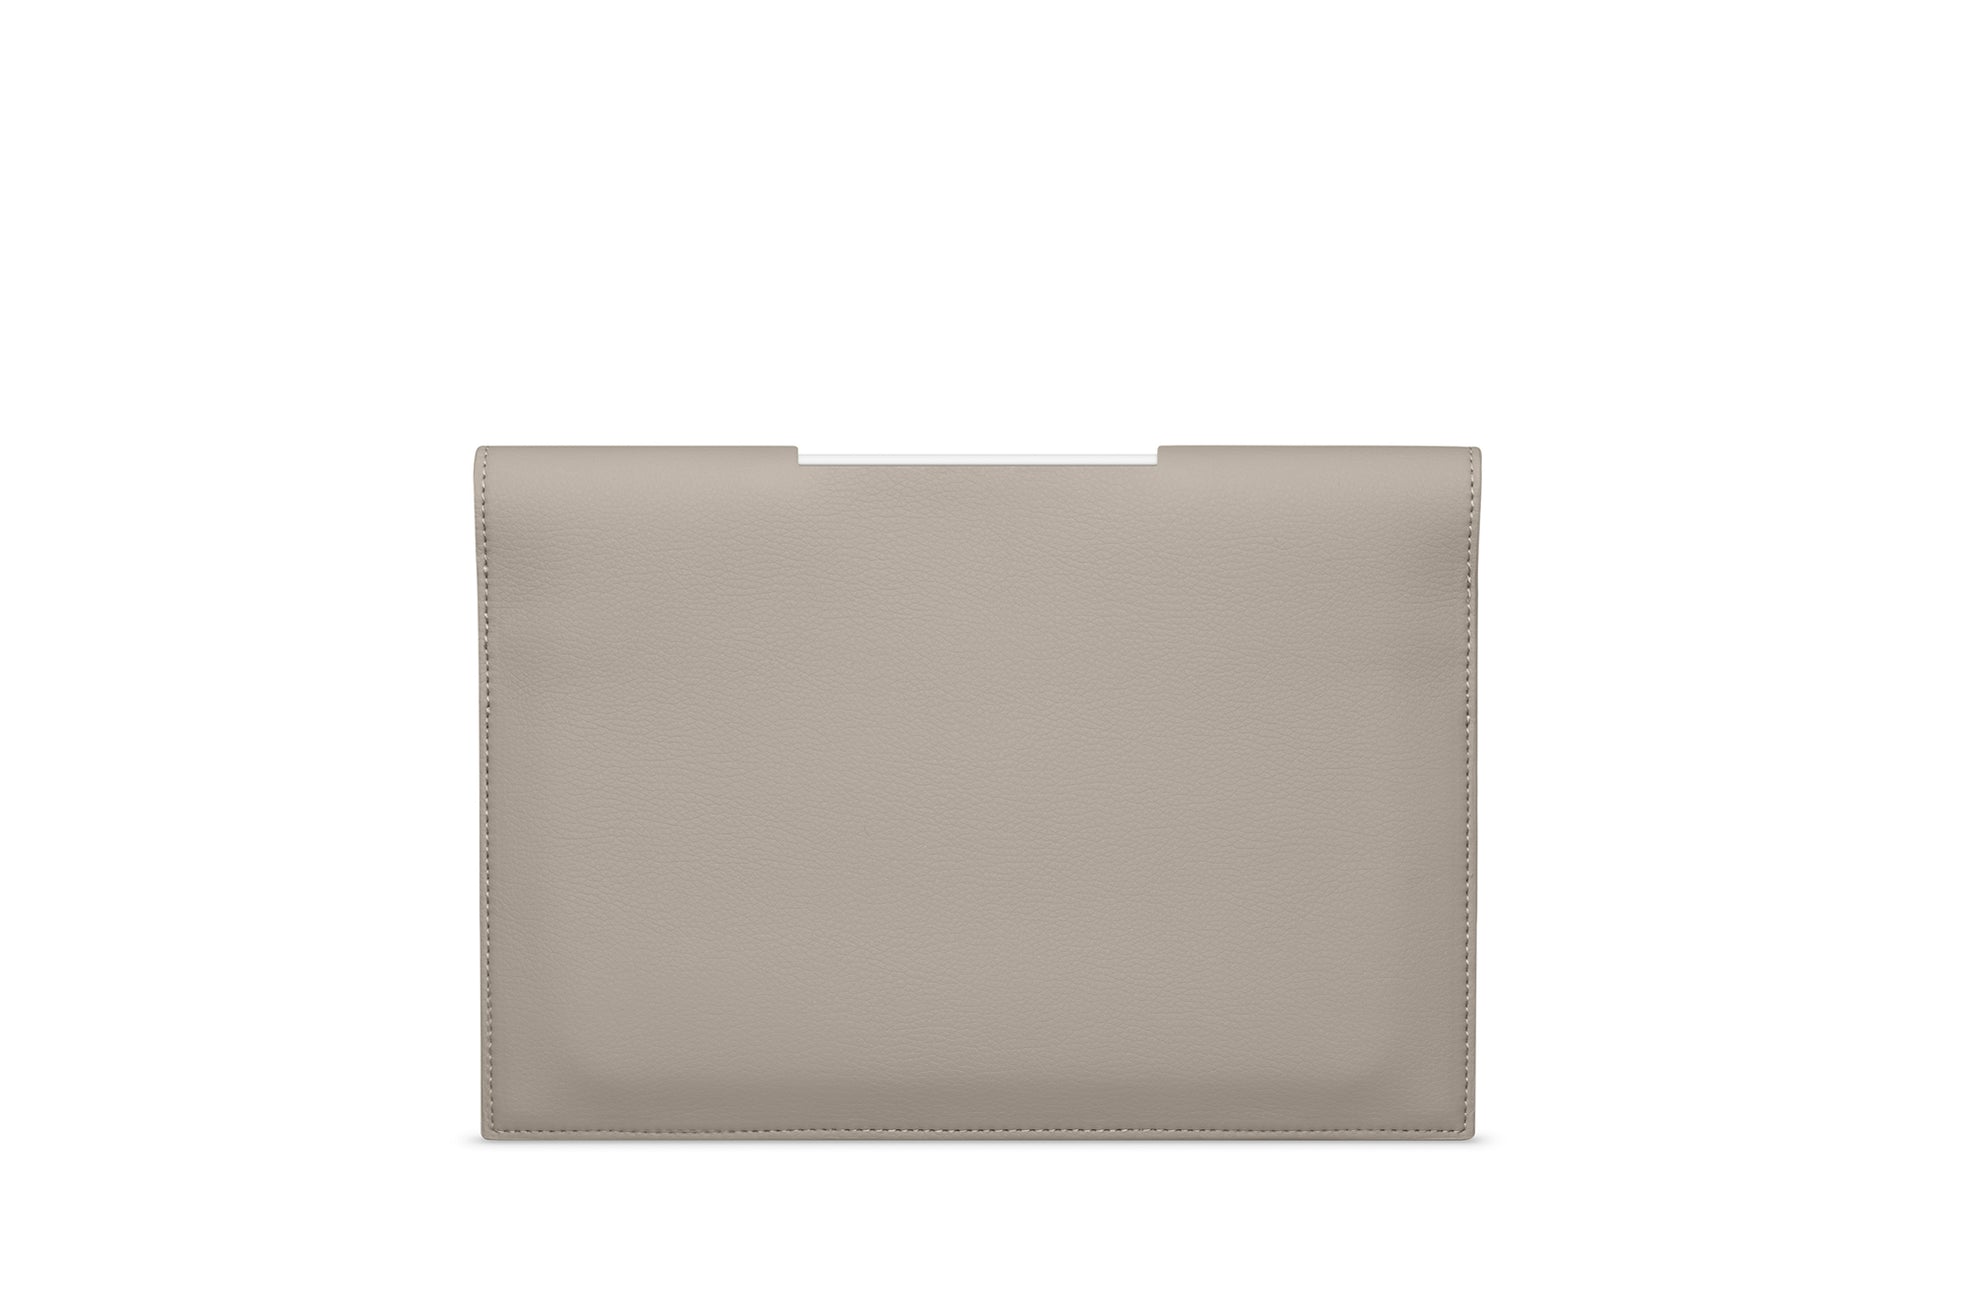 The iPad Portfolio 11-inch - Sample Sale in Technik in Stone image 2